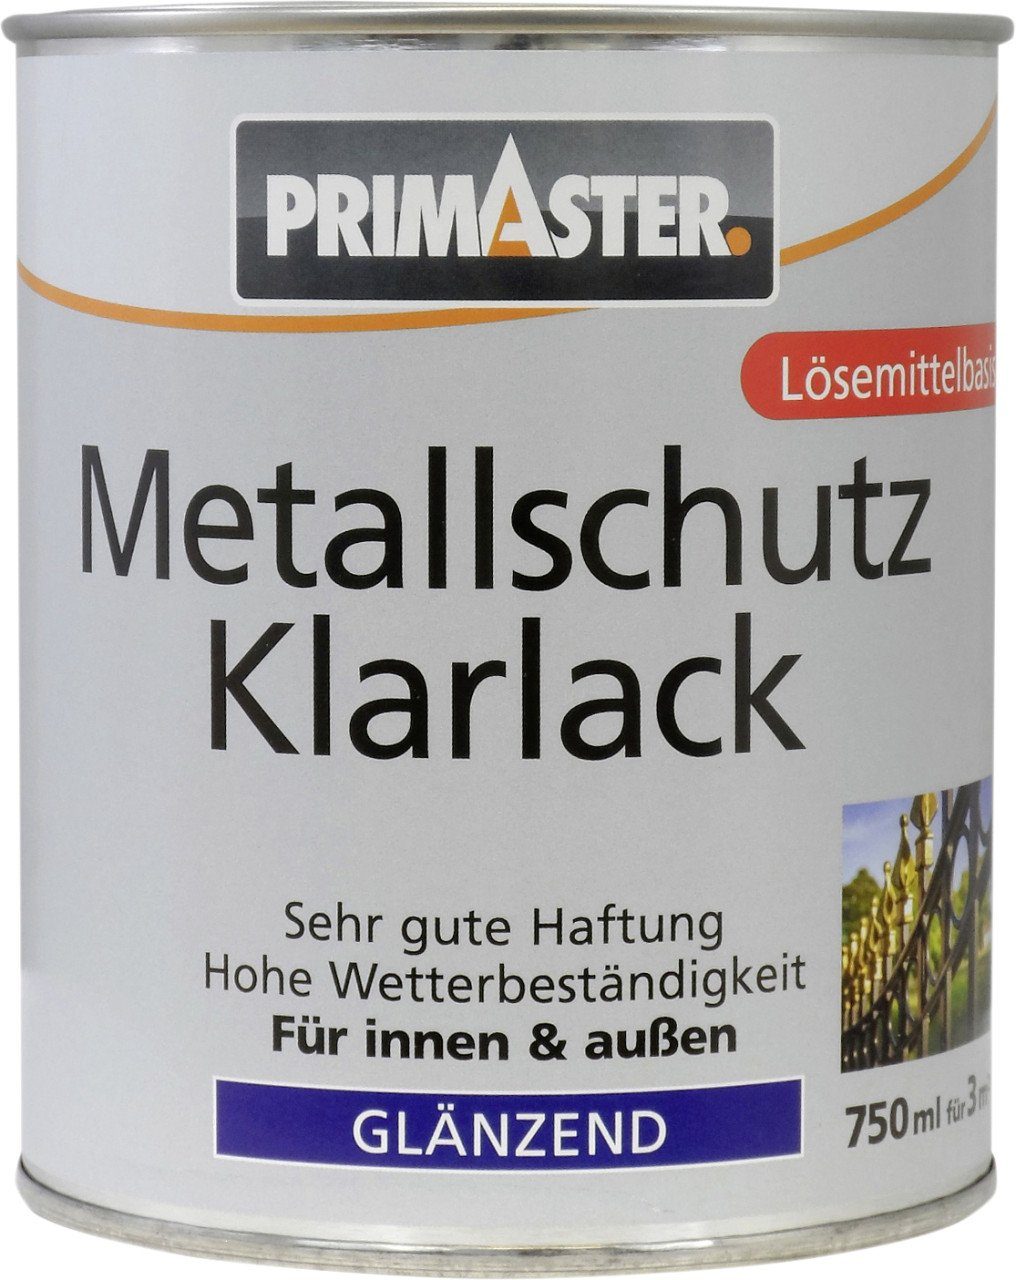 Primaster glänzend ml Metallschutzlack Metallschutzklarlack Primaster 750